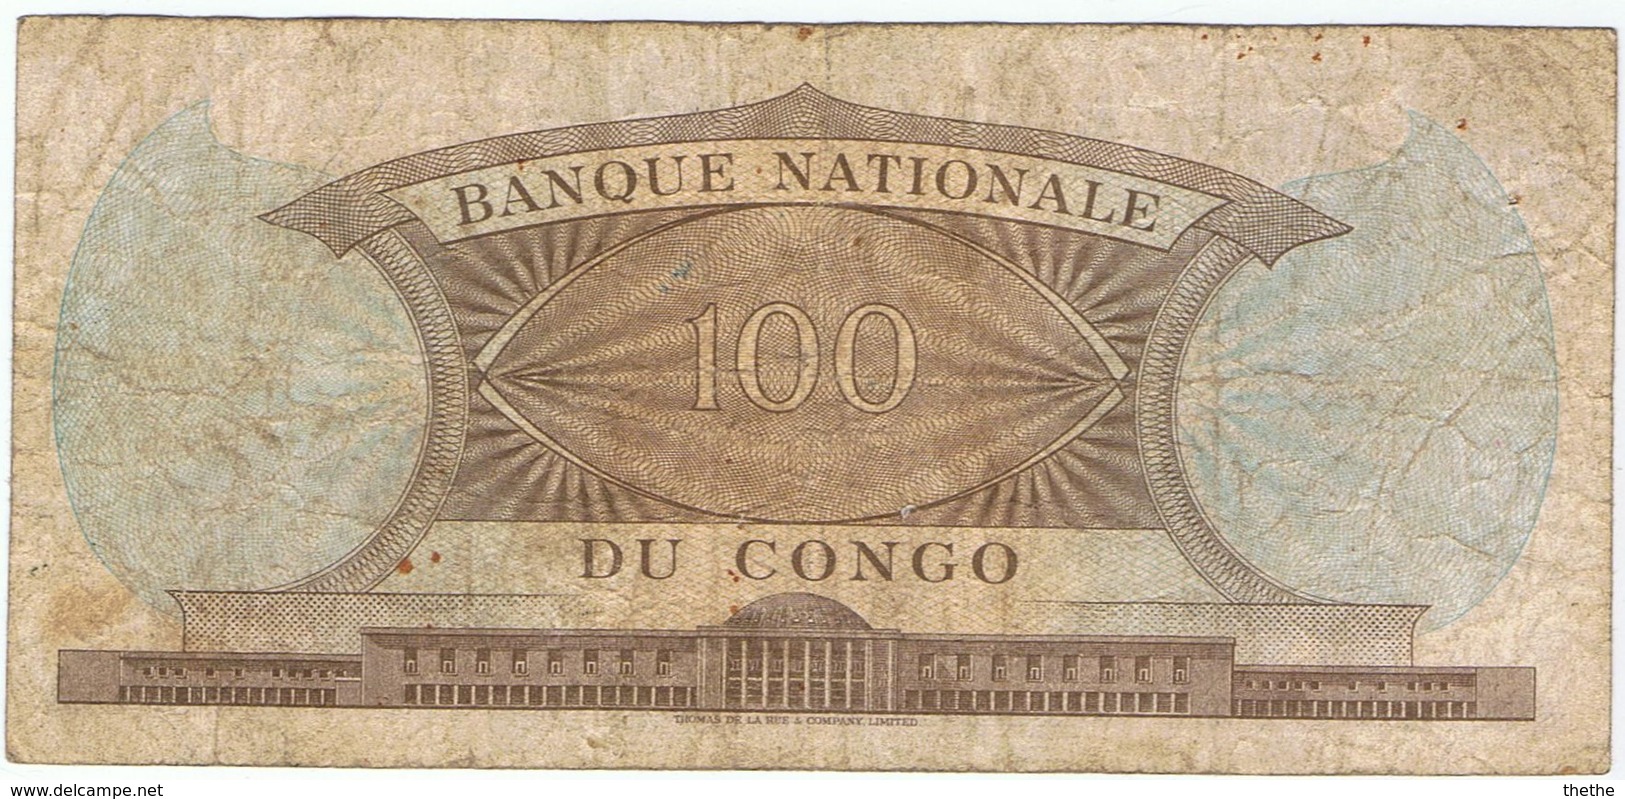 CONGO - 100 FRANCS - 1961 - République Du Congo (Congo-Brazzaville)